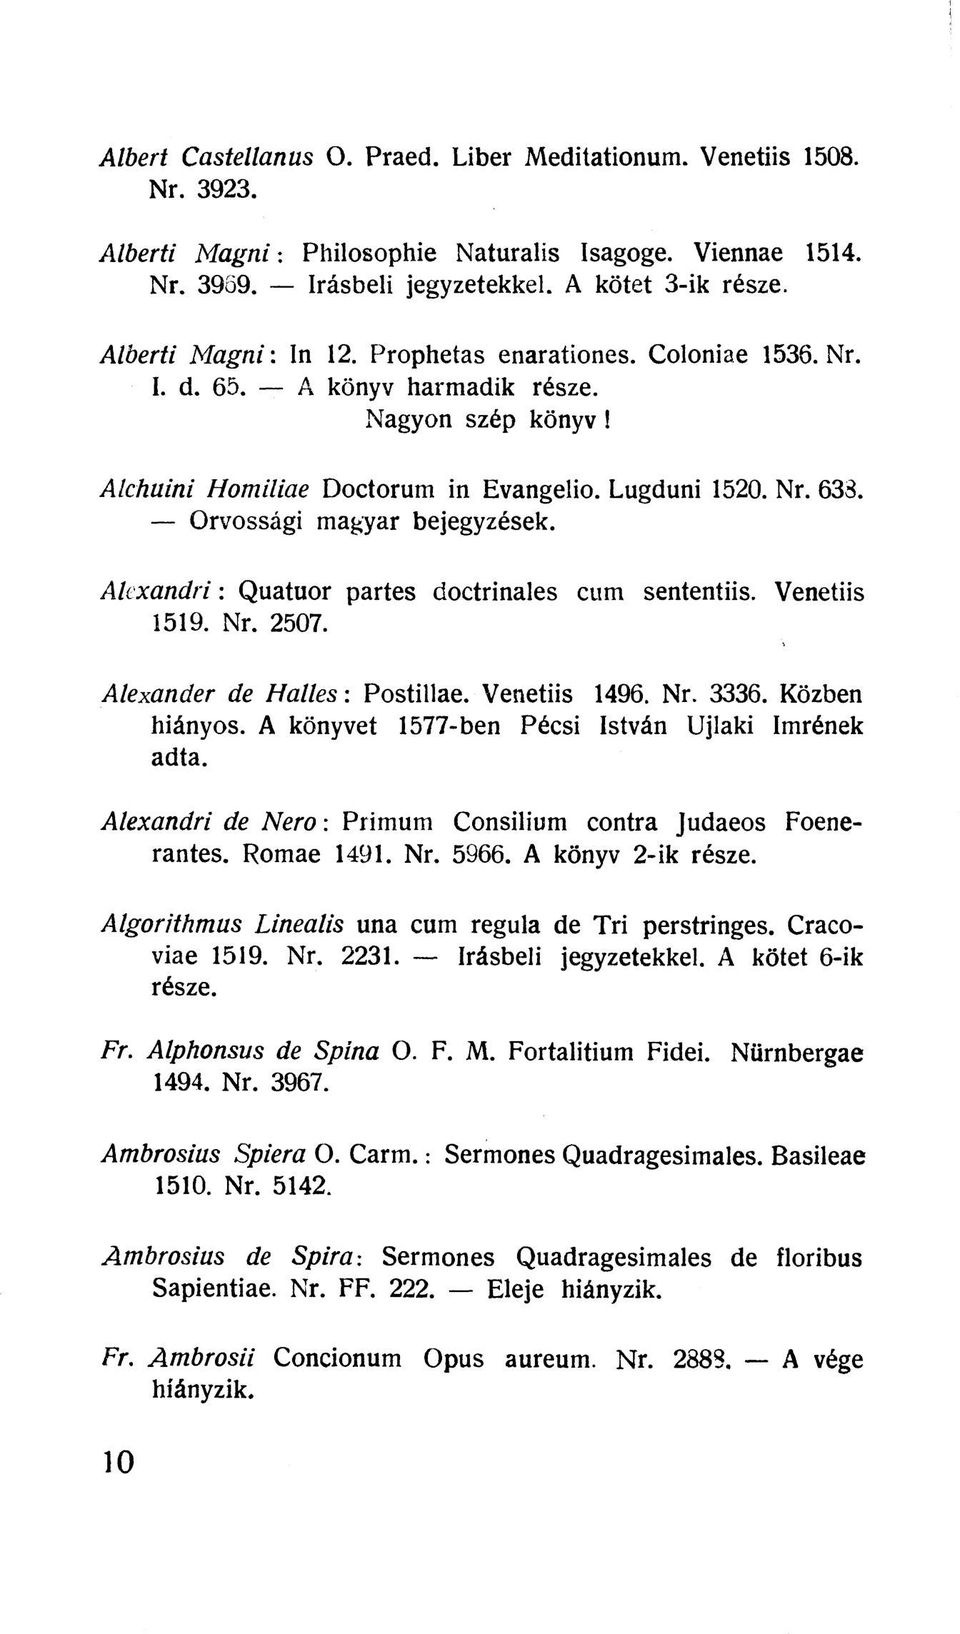 Orvossági magyar bejegyzések. Alexandri: Quatuor partes doctrinales cum sententiis. Venetiis 1519. Nr. 2507. Alexander de Halles: Postillae. Venetiis 1496. Nr. 3336. Közben hiányos.